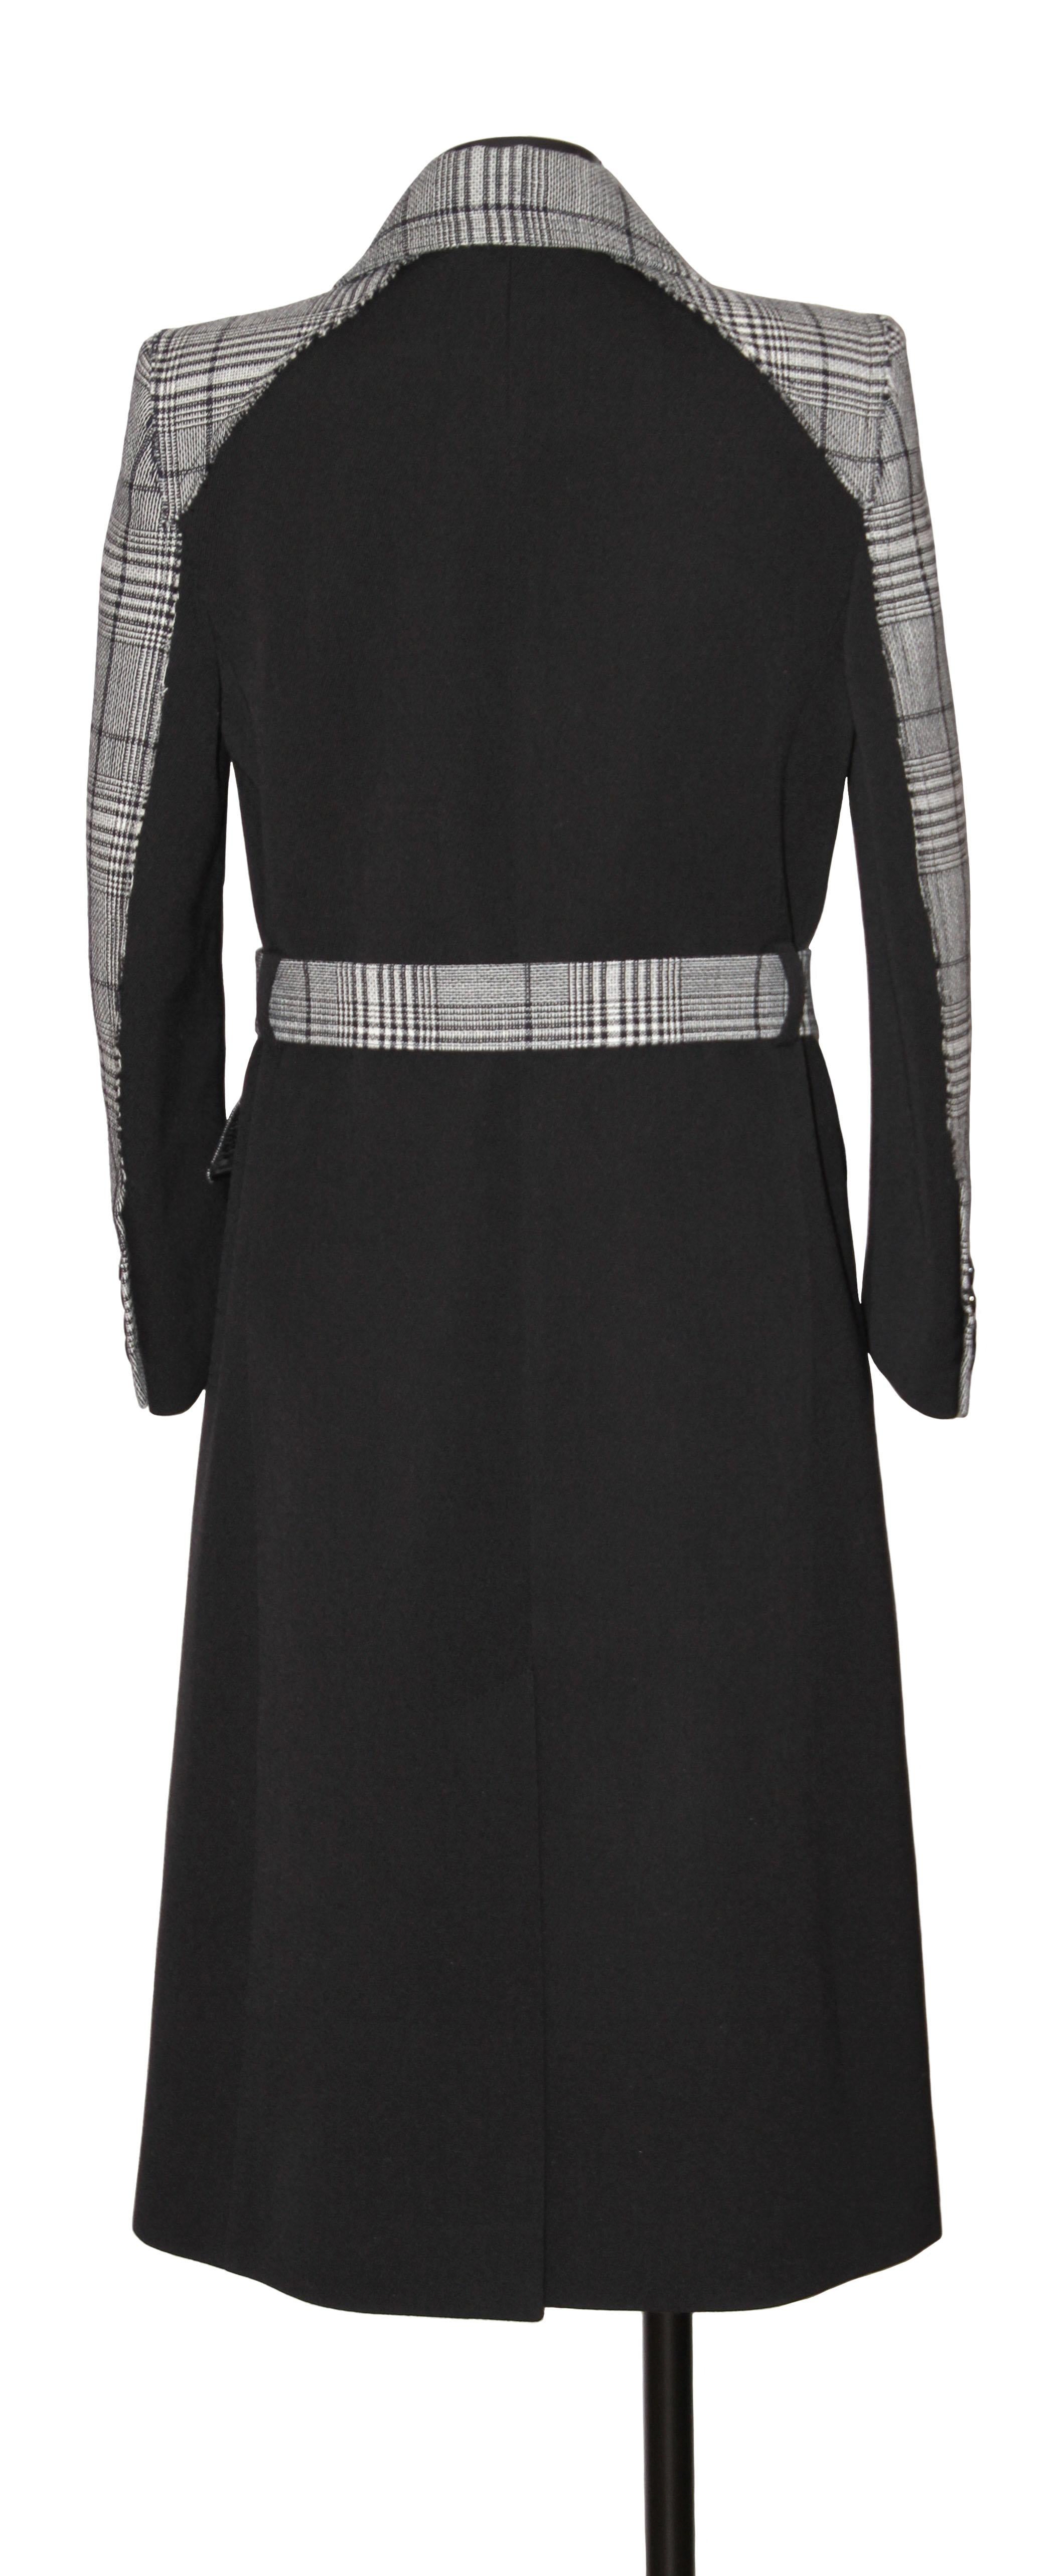 Dieser schöne, gebrauchte, aber neue Mantel von Givenchy ist aus einer herrlichen, klassischen Wolle mit Prince of Wales-Karomuster gefertigt.
Die Rückseite ist mit schwarzen Wollgemisch-Einsätzen und einem passenden Gürtel in beiden Mustern